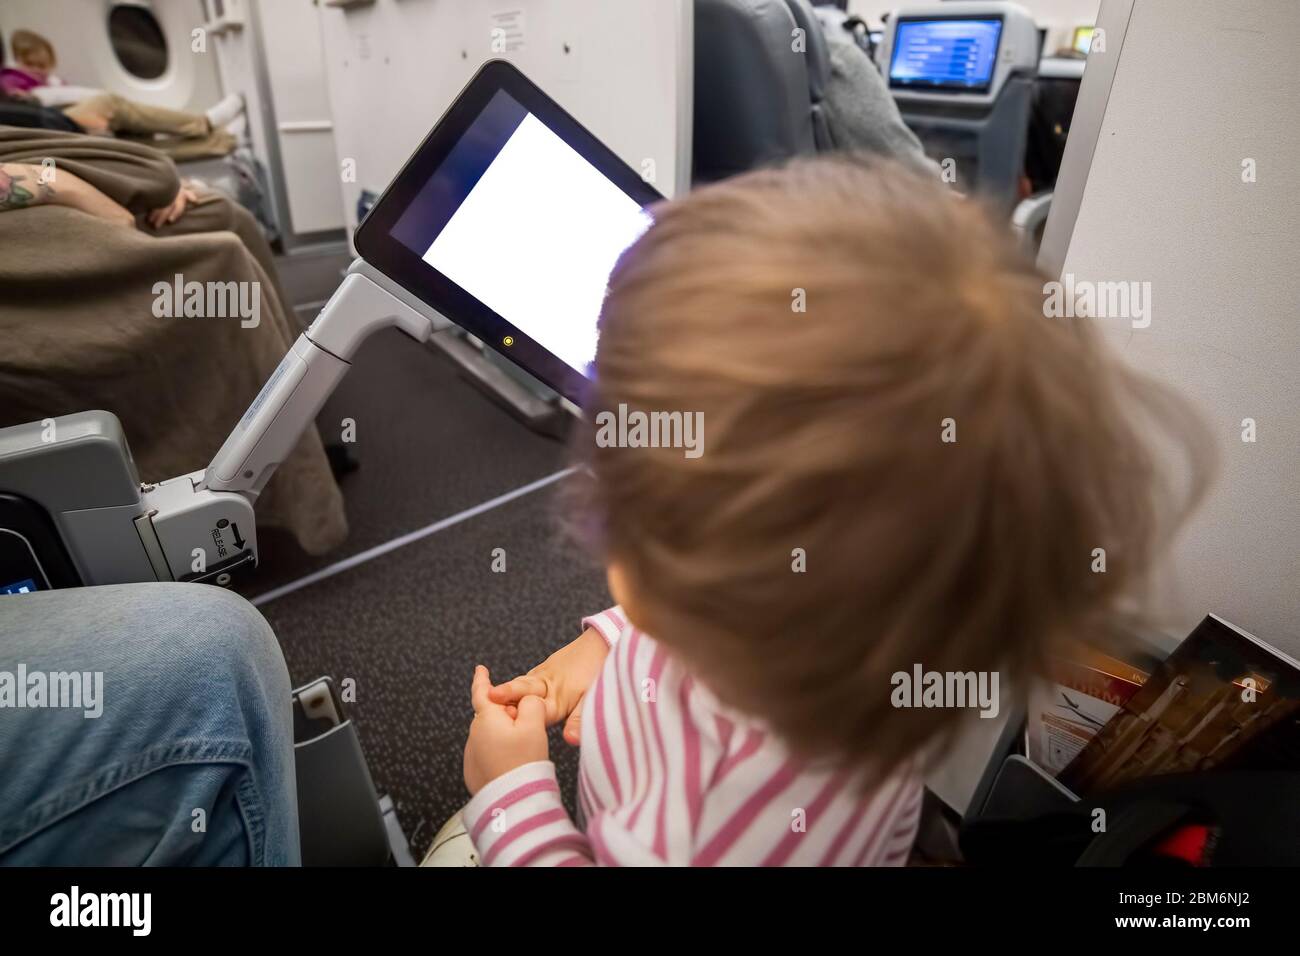 Unterhaltung an Bord des Flugzeugs. Kind, das auf weißen Bildschirm des Copyspace-Flugzeuges Multimedia-System schaut. Stockfoto